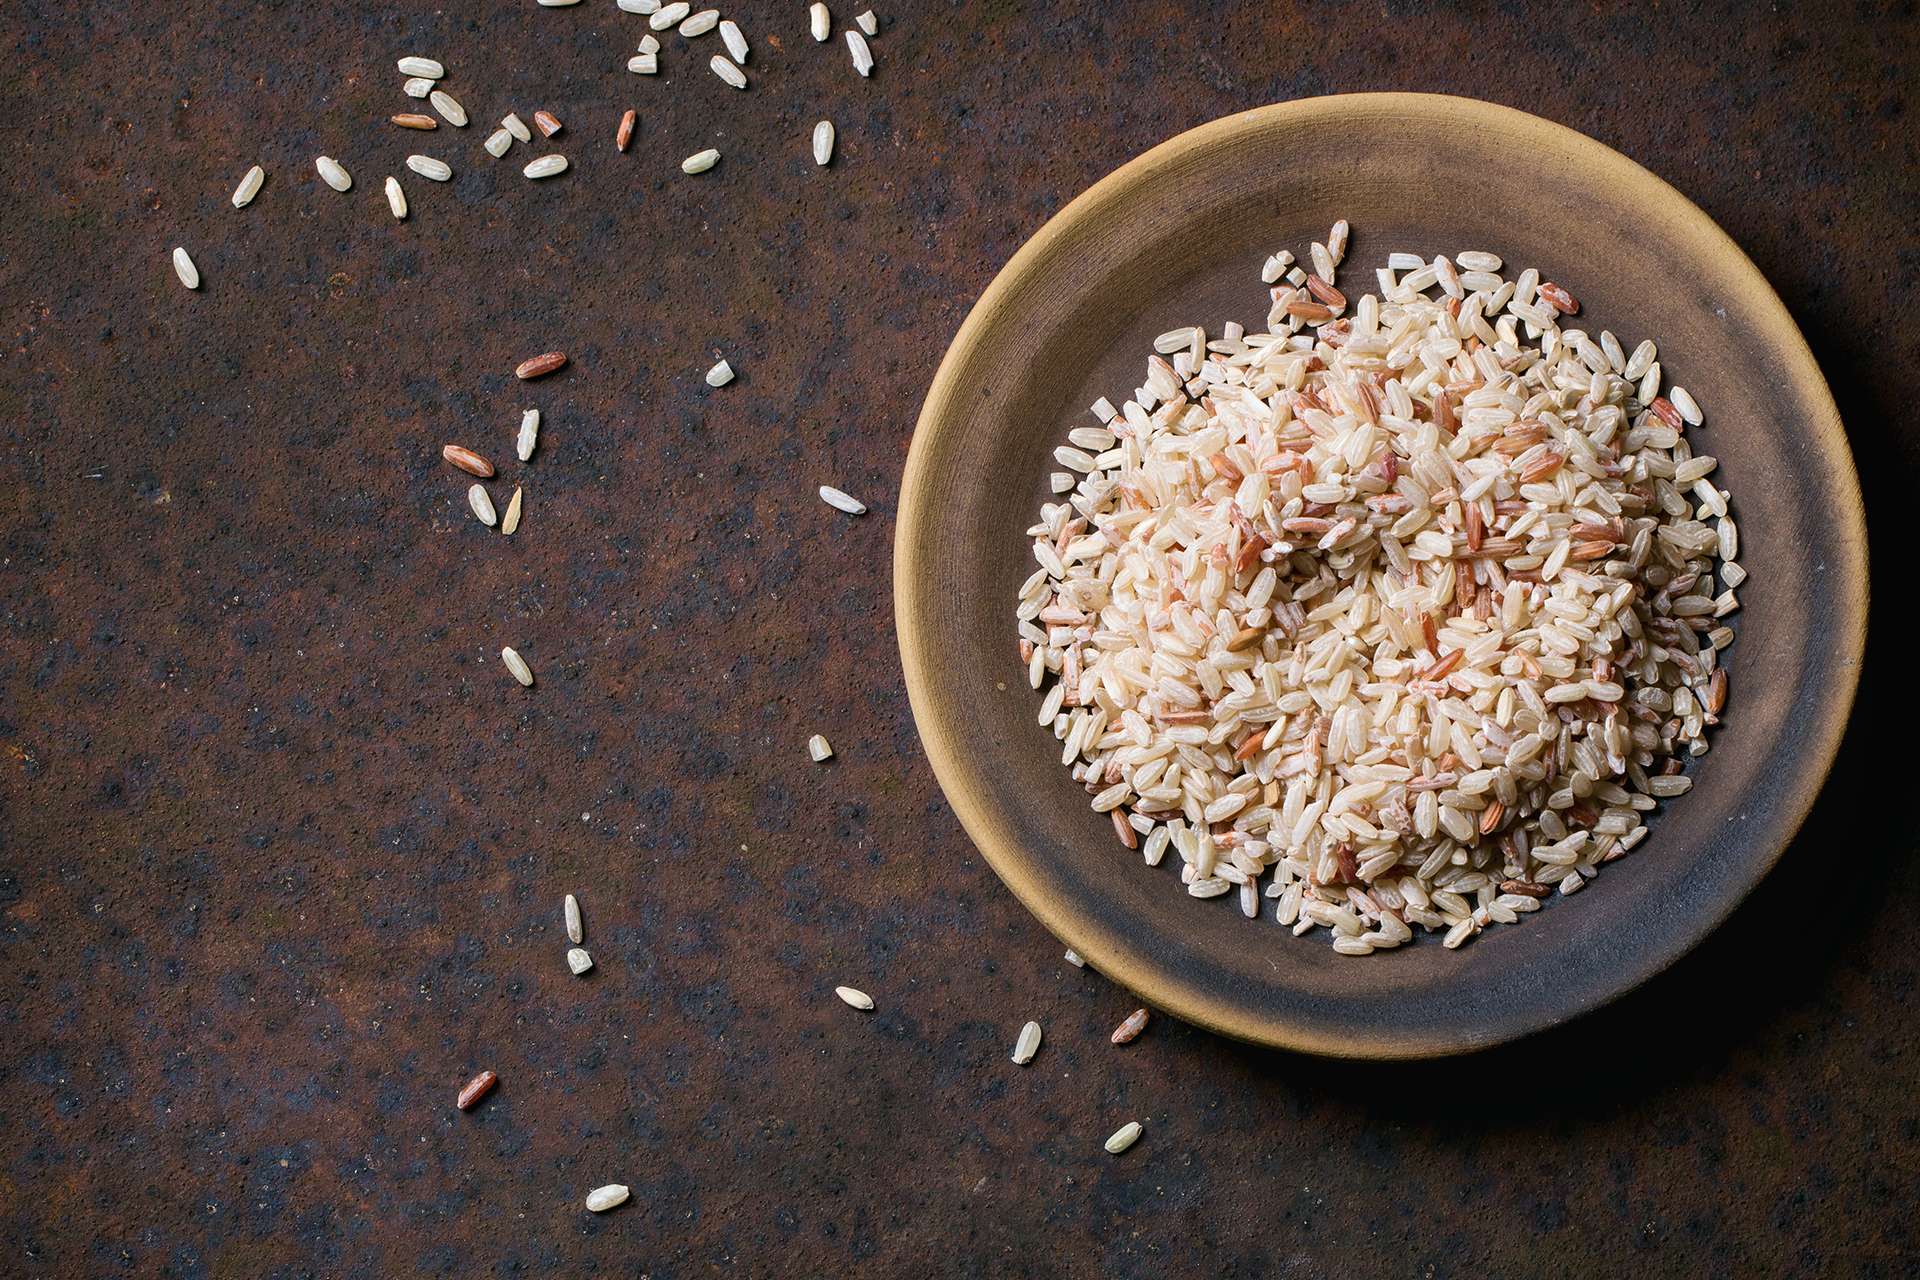 Chladenie ryže počas varenia vám umožní získať výhody z tohto konkrétneho škrobu